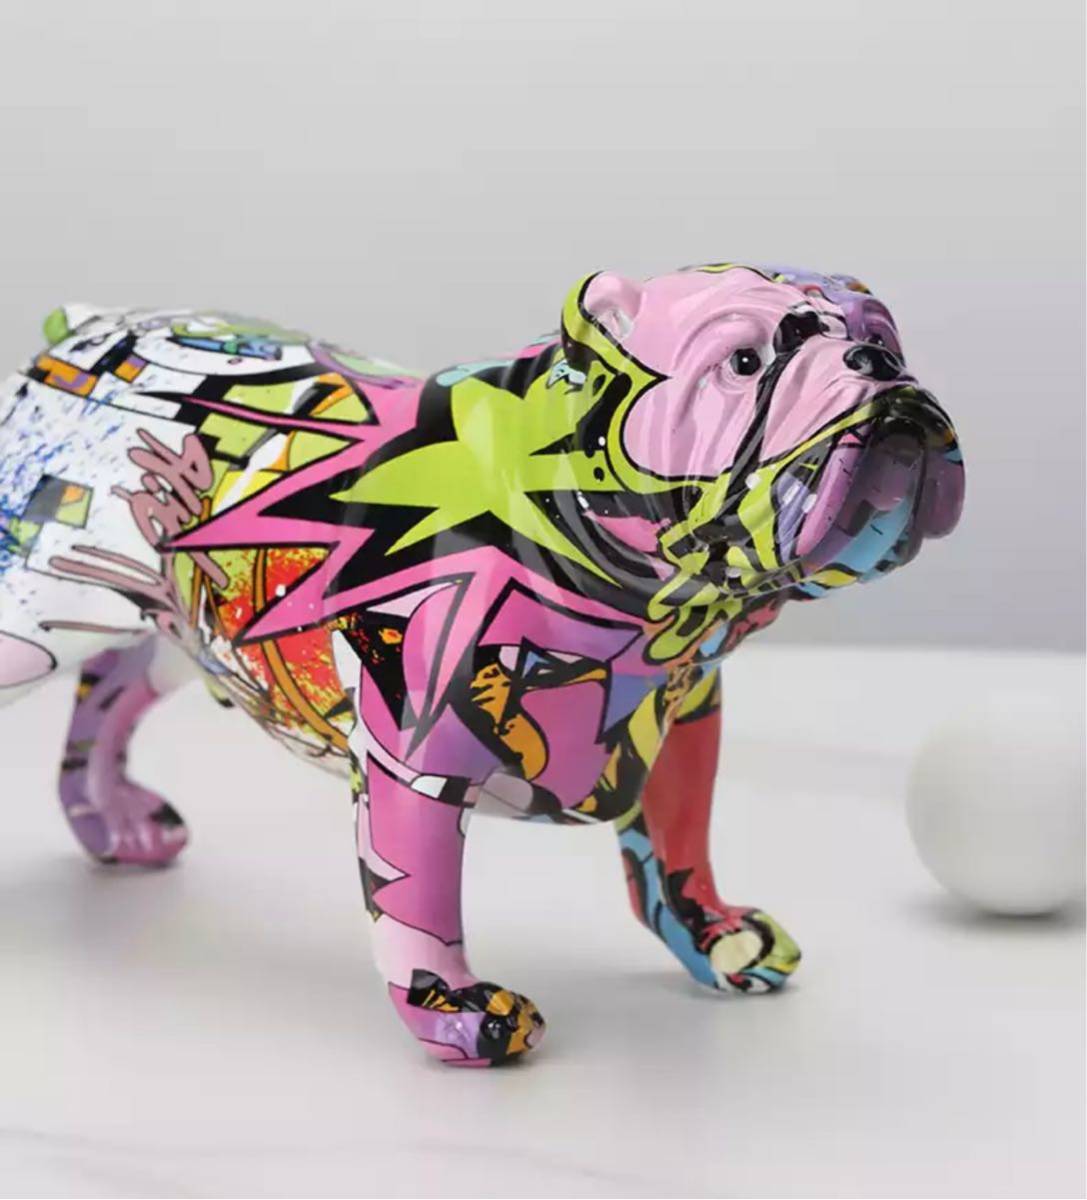 ペイントブルドッグ 落書き インテリア オブジェ 現代アート アート ブルドッグ 置物 小物 抽象 アーティスティック イヌ 犬 ドッグ 555_画像2